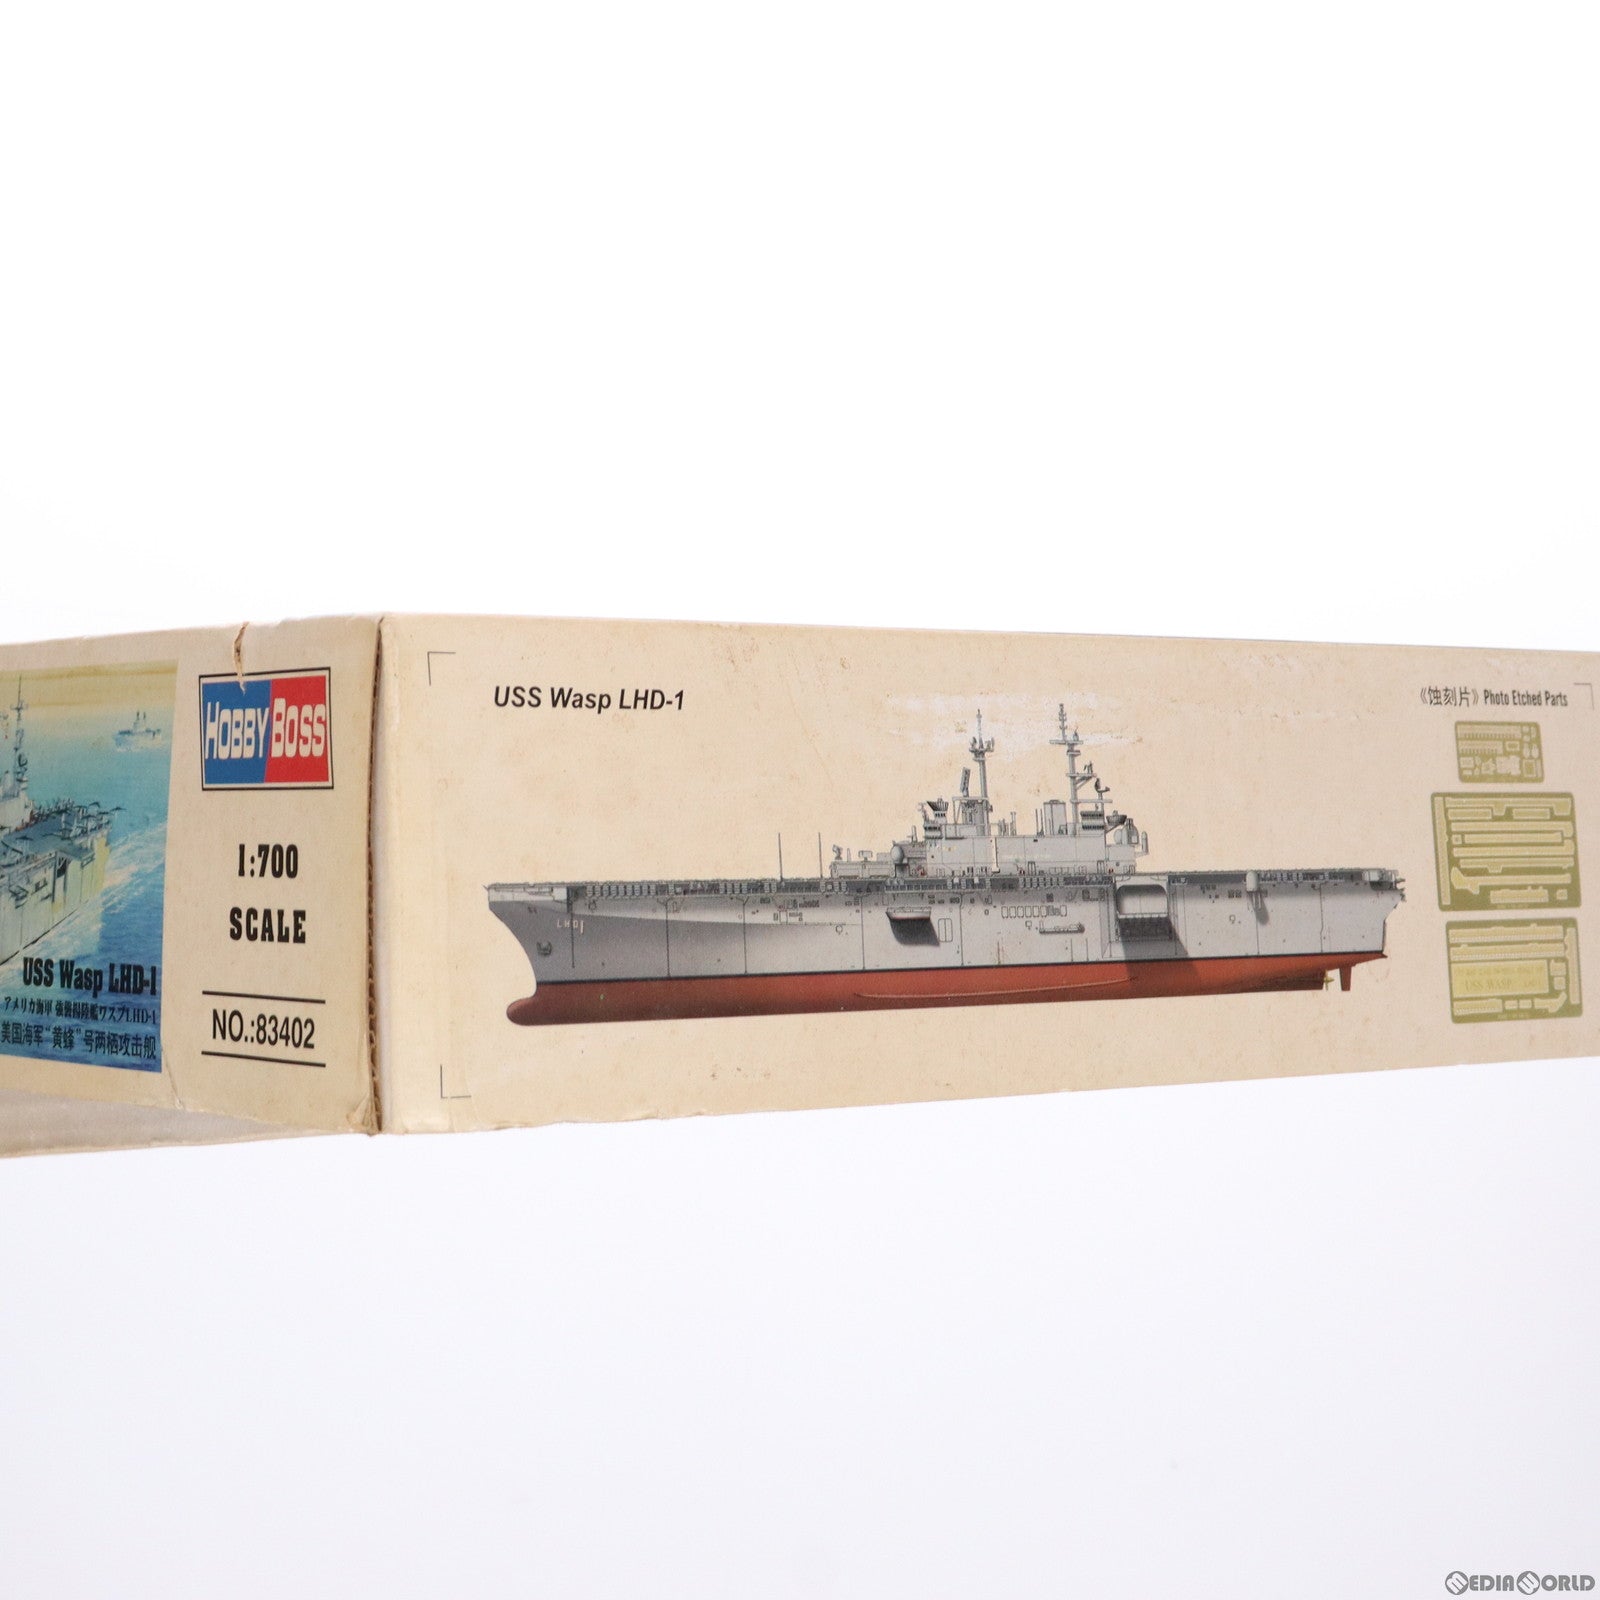 【中古即納】[PTM]艦船シリーズ 1/700 アメリカ海軍 強襲揚陸艦ワスプ LHD-1 プラモデル(83402) ホビーボス(20111215)